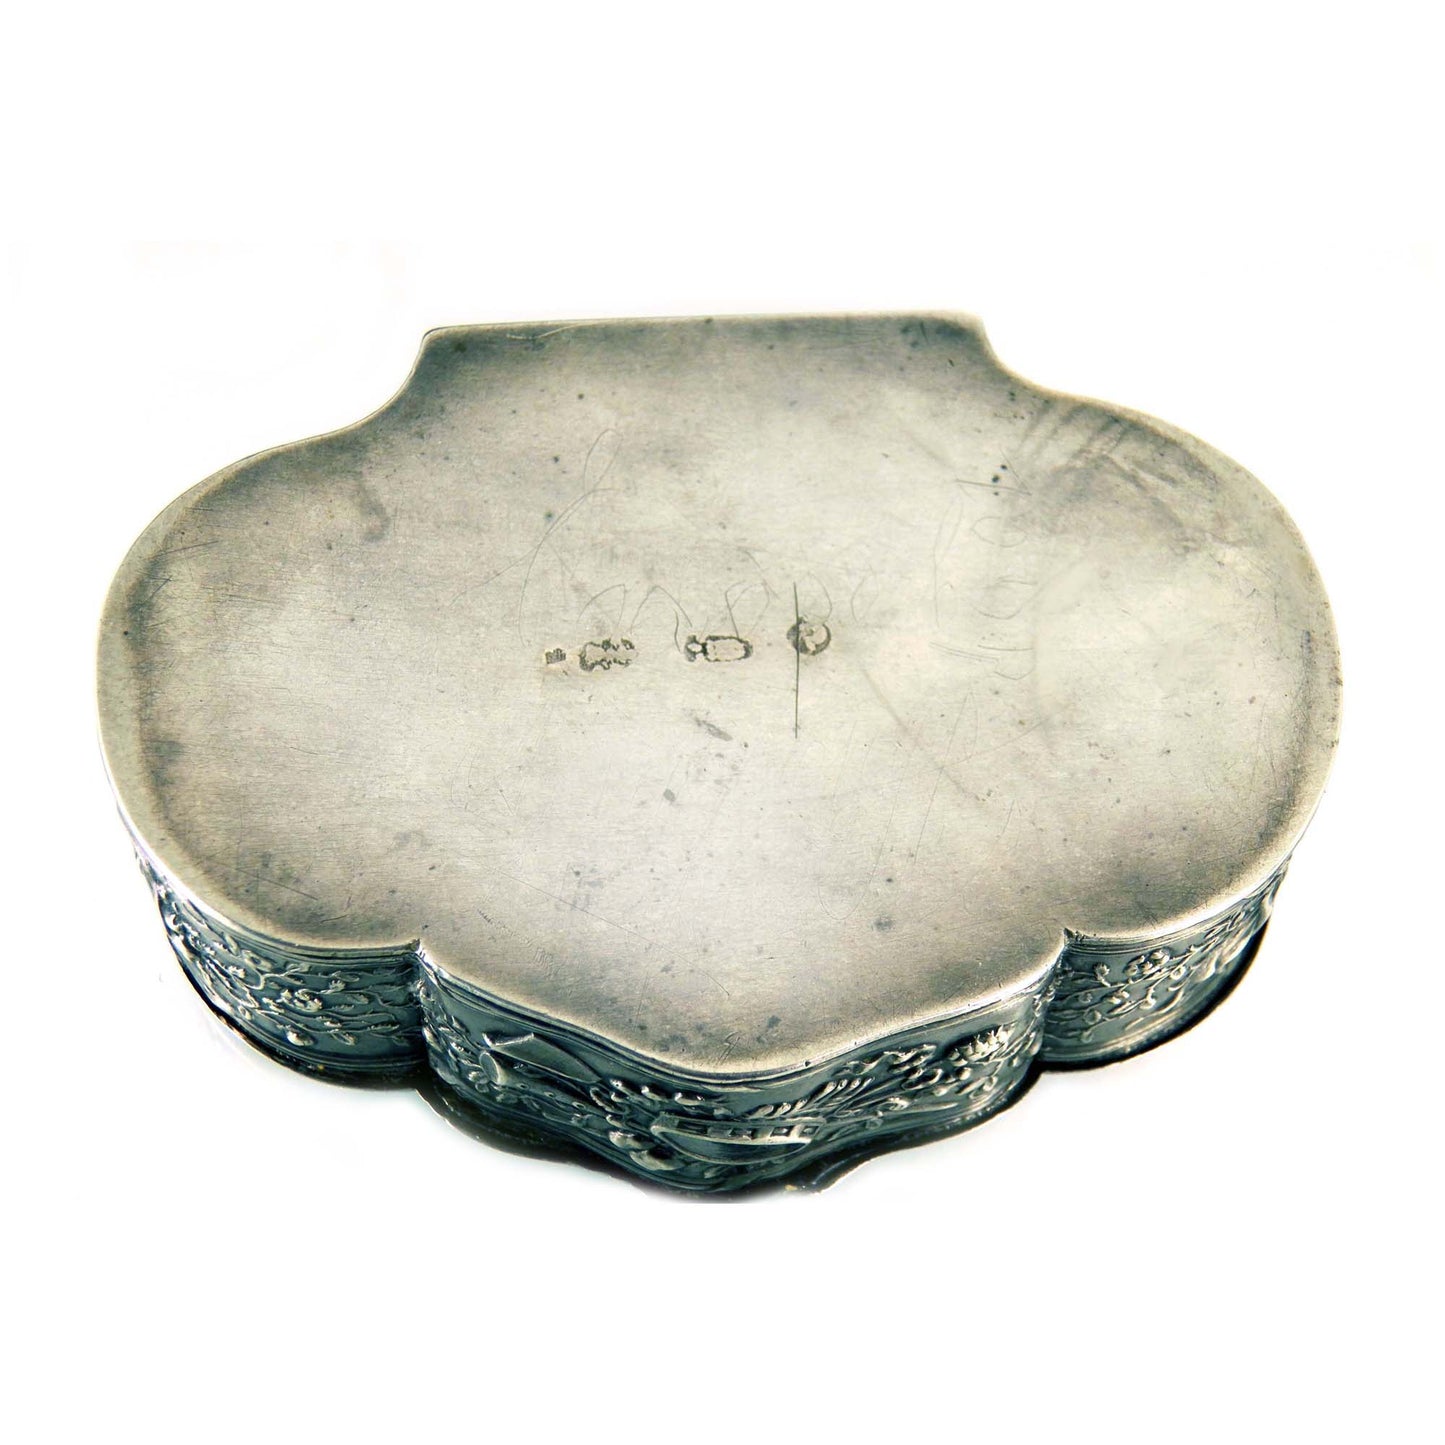 833 Silver Antique Snuff Box, Dutch Rocaille Ornament Box 1800s